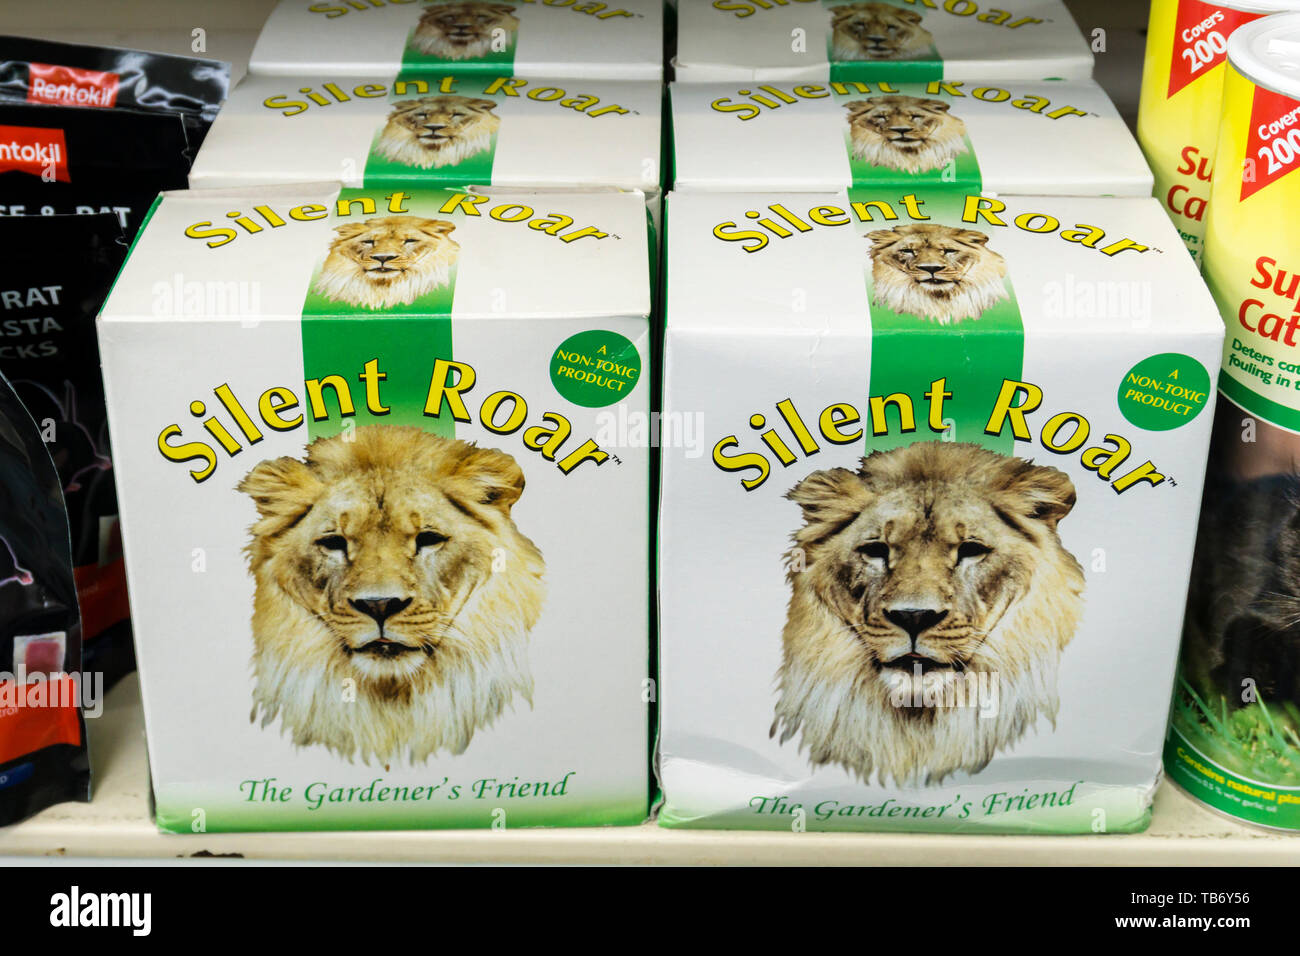 Silent rugido es un fertilizante basado en nitrógeno que se ha empapado en lion estiércol para disuadir a los gatos domésticos. Foto de stock